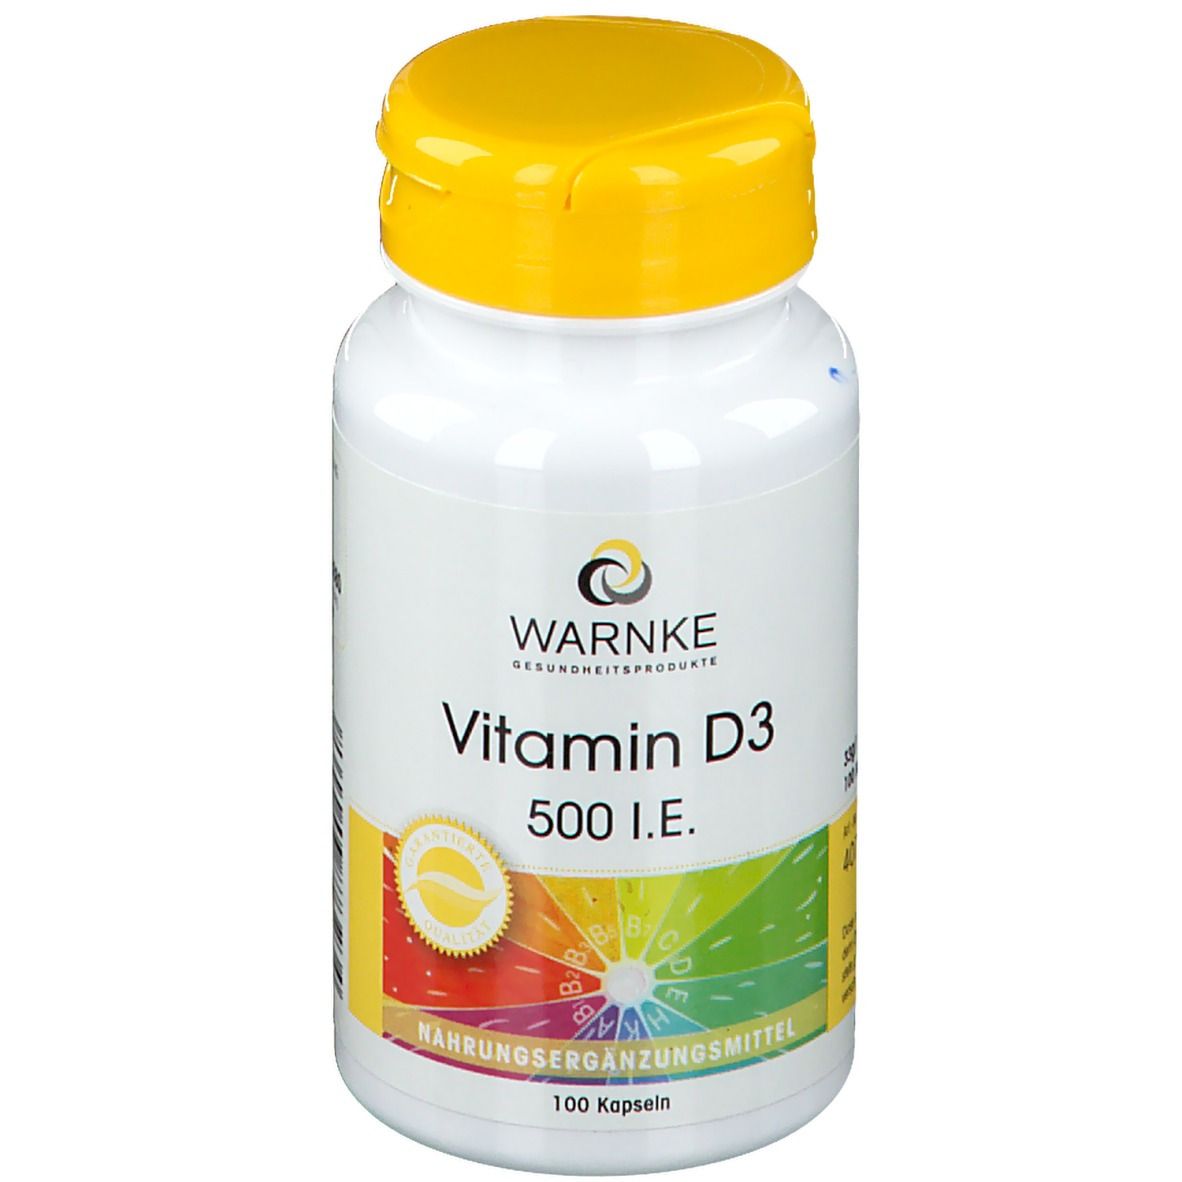 WARNKE Vitamin D3 500 I.E.